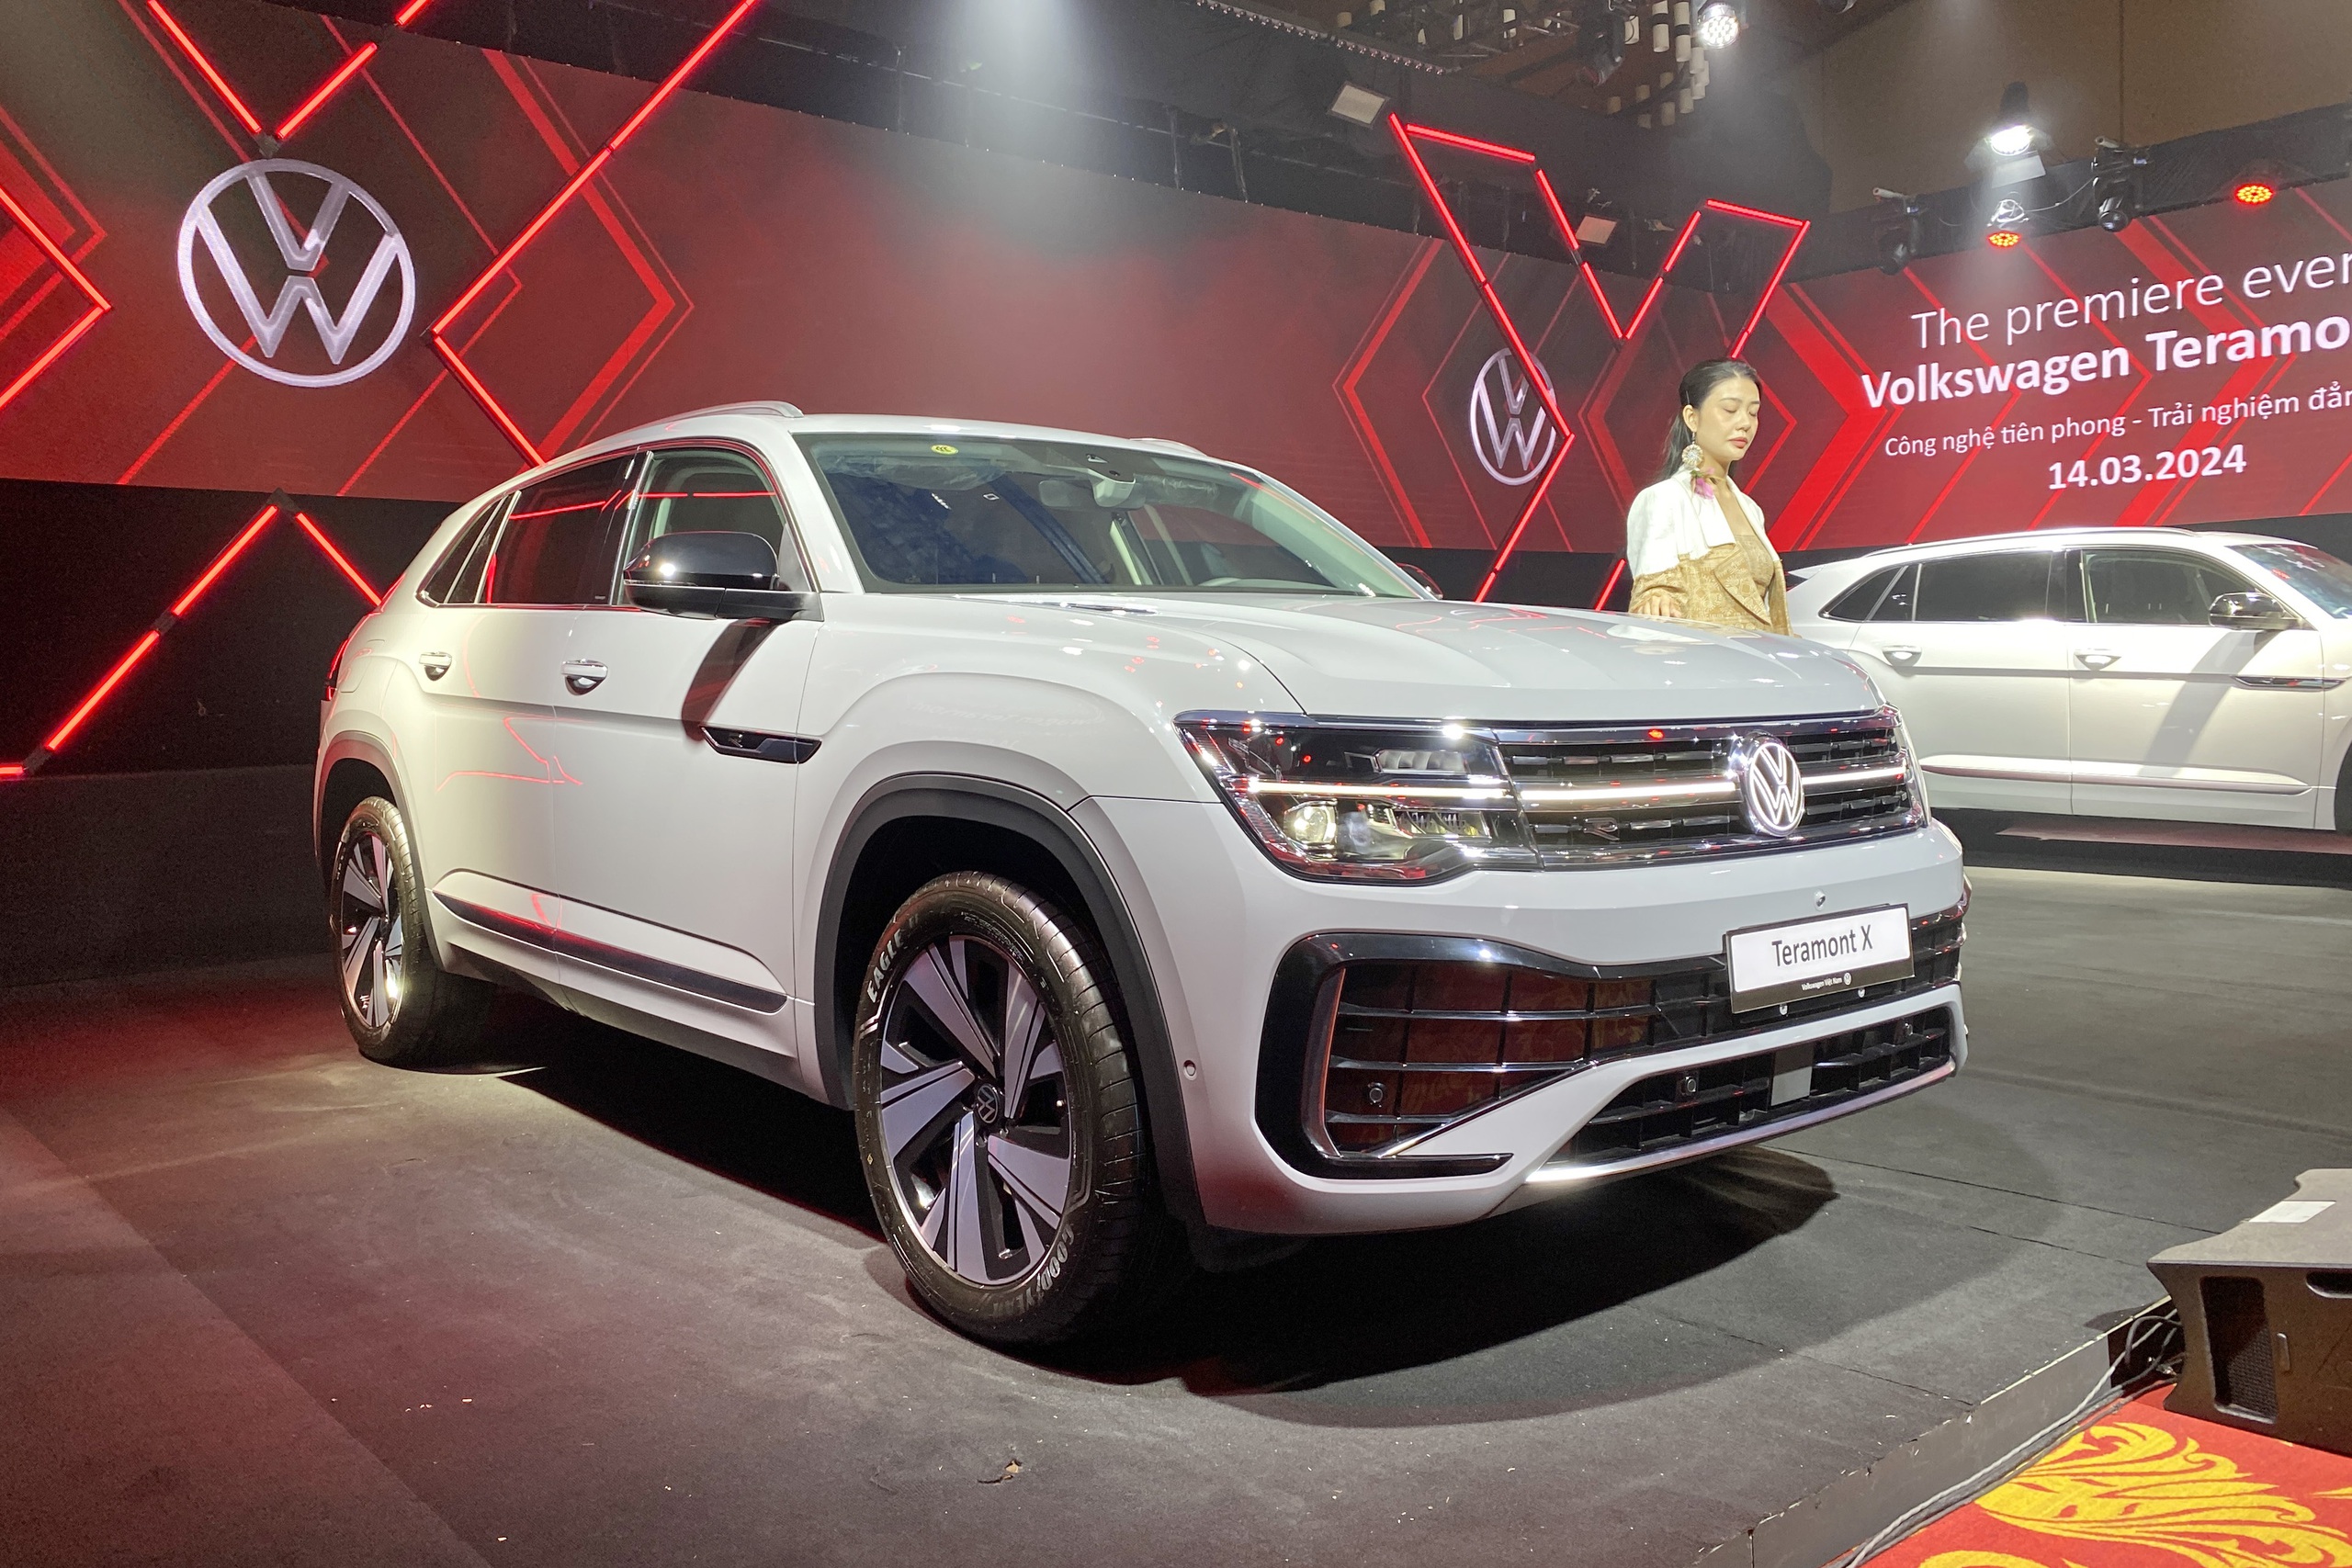 VW Teramont X ra mắt Việt Nam: Giá từ 1,998 tỷ, 2 phiên bản, nhiều công nghệ, đấu Explorer bằng giá rẻ hơn đúng 1 triệu đồng - ảnh 3